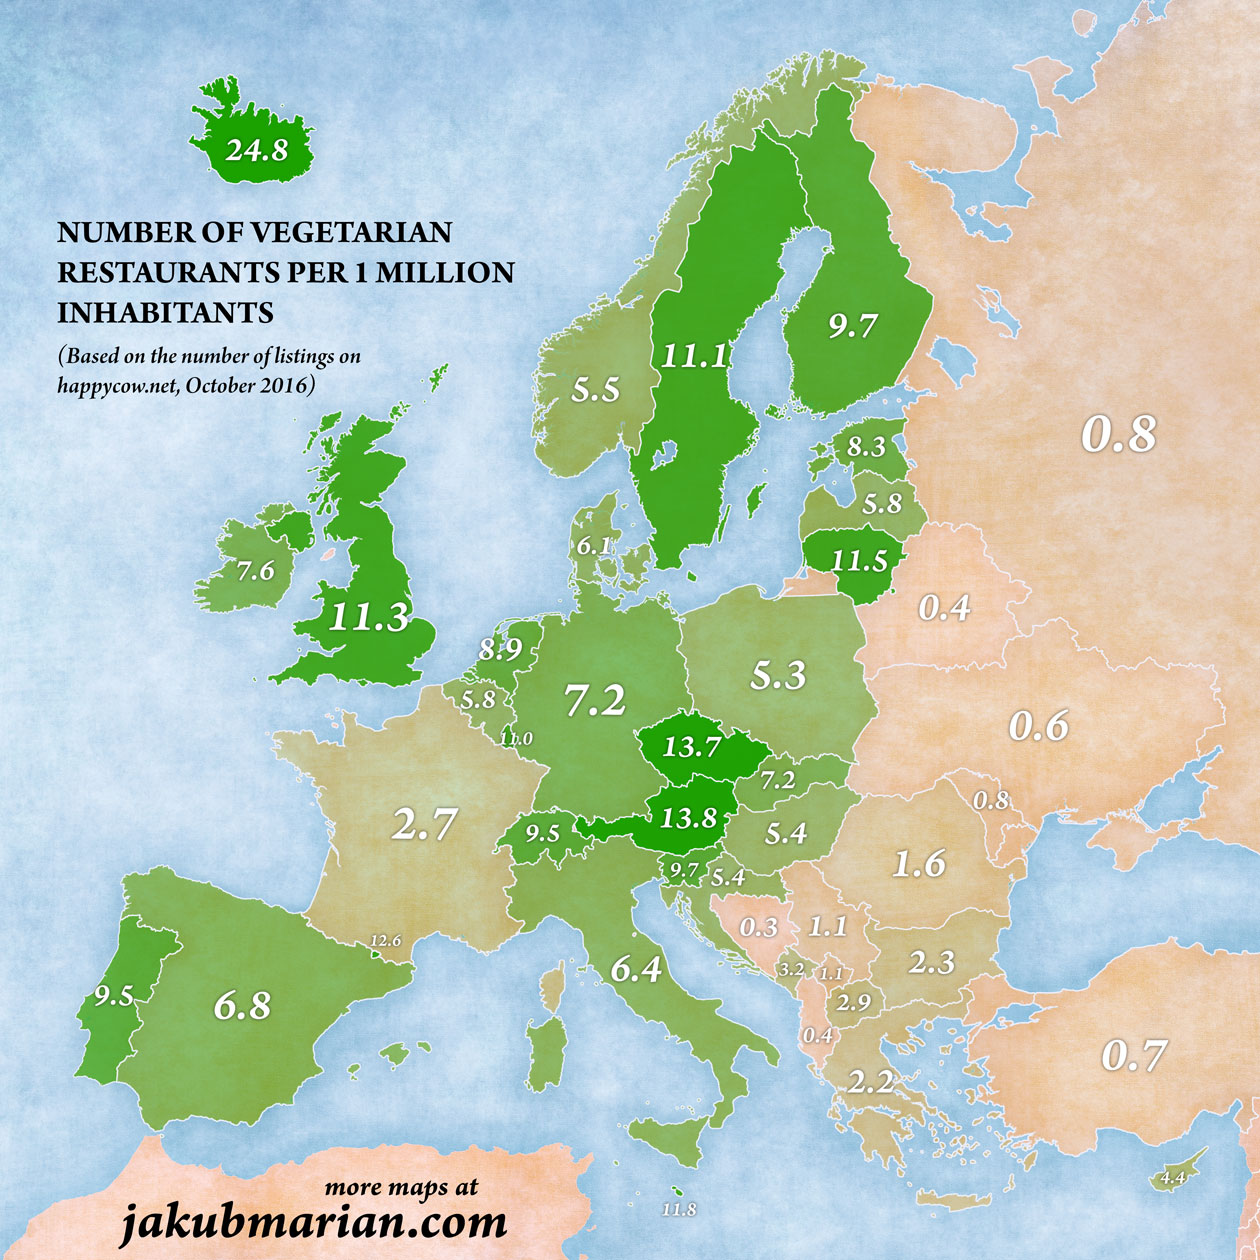 Ristoranti vegetariani, mappa dell'Europa